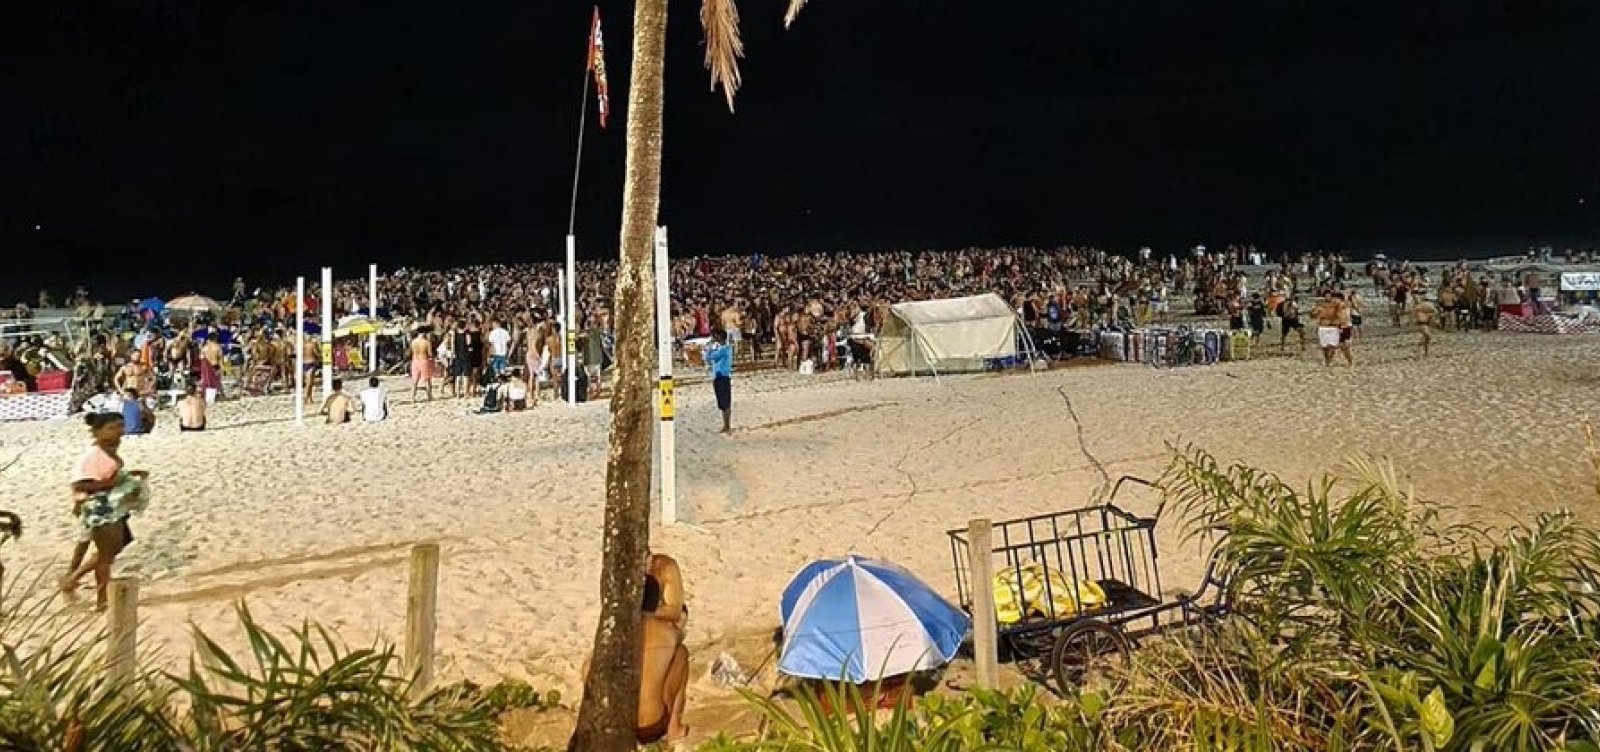 Festa lota as areias da praia de Ipanema, no Rio de Janeiro